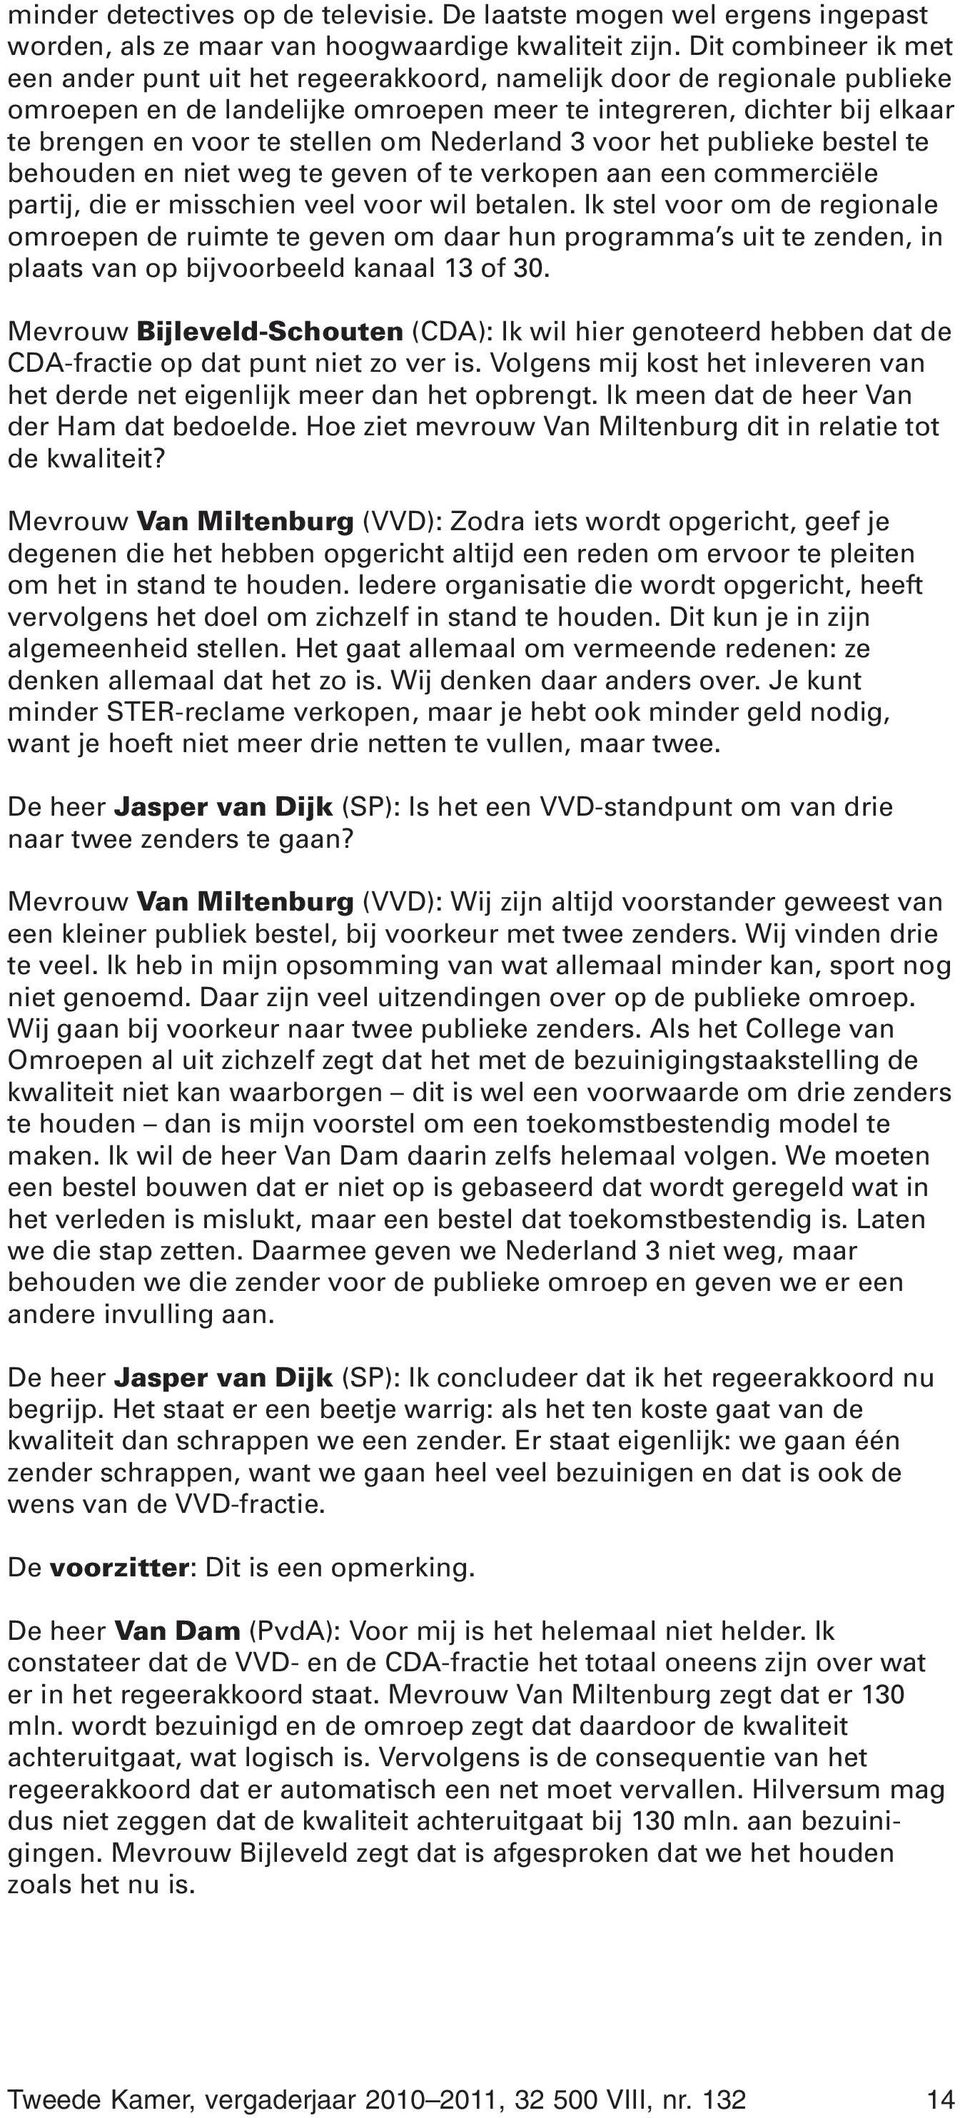 om Nederland 3 voor het publieke bestel te behouden en niet weg te geven of te verkopen aan een commerciële partij, die er misschien veel voor wil betalen.